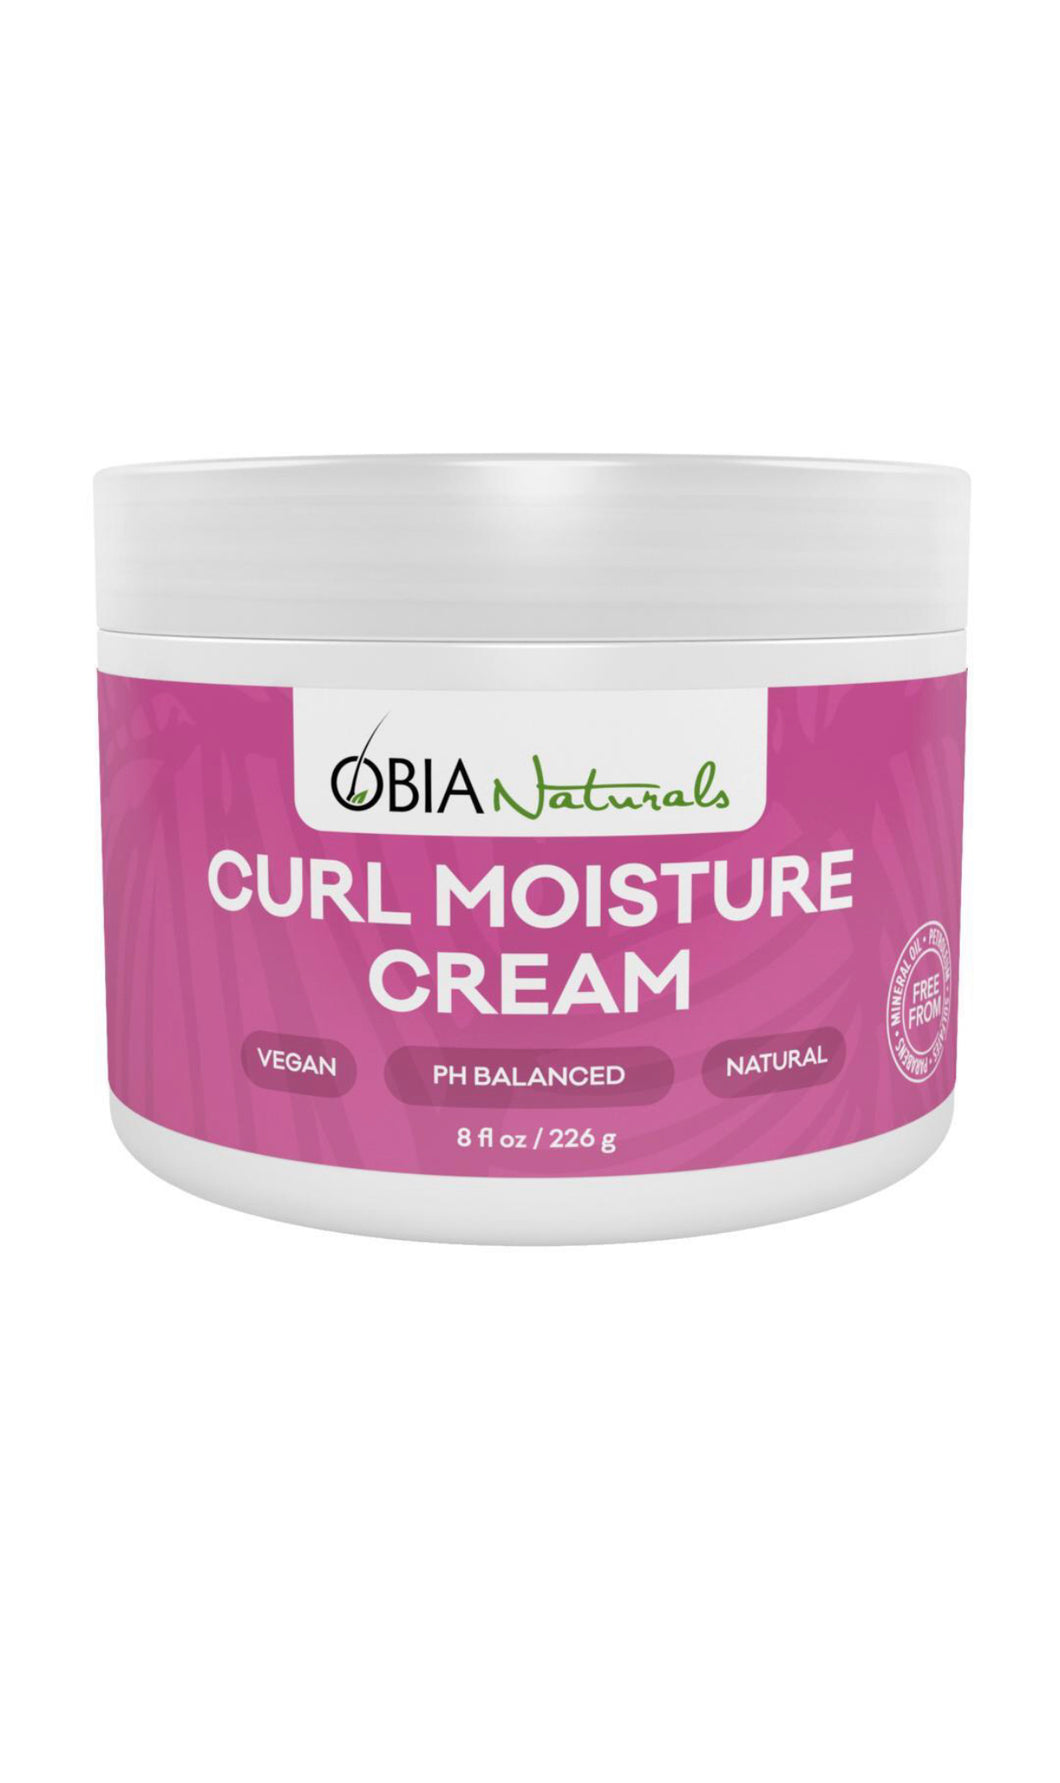 OBIA Naturals Curls Moisture Cream 12 oz